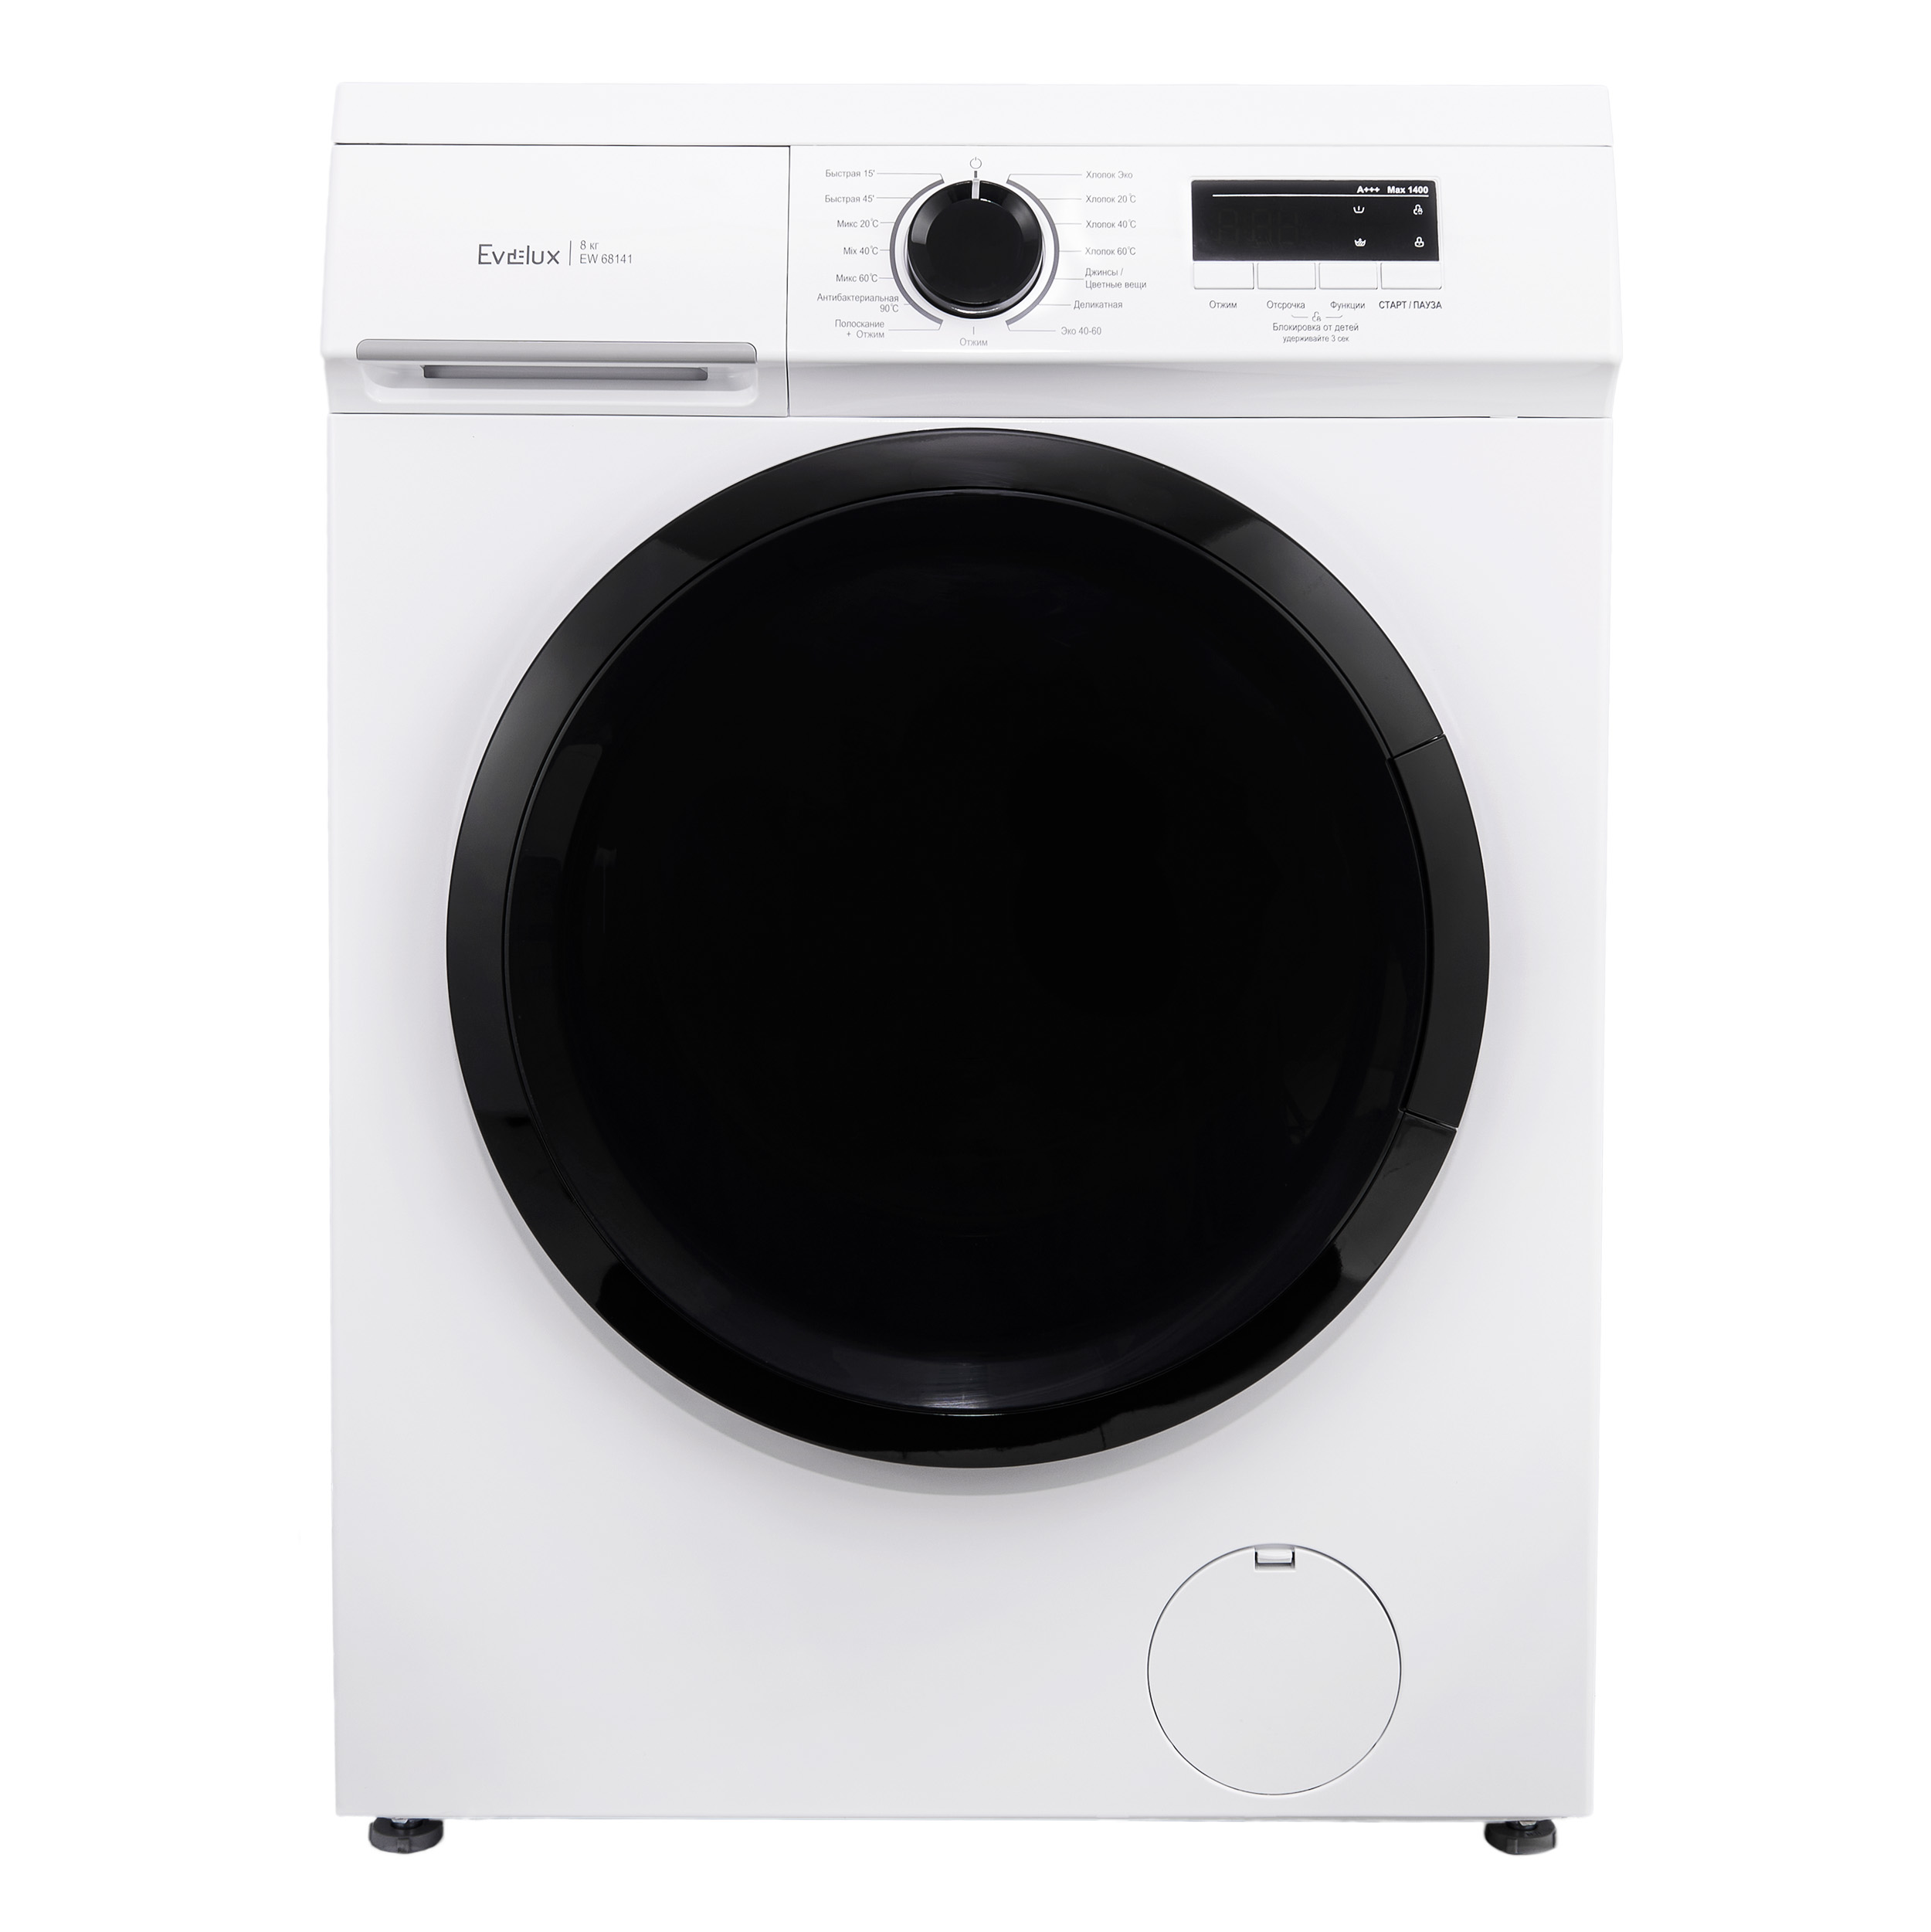 Стиральная машина Evelux EW 68141 белый стиральная машина whirlpool w7x w845wb ee белый